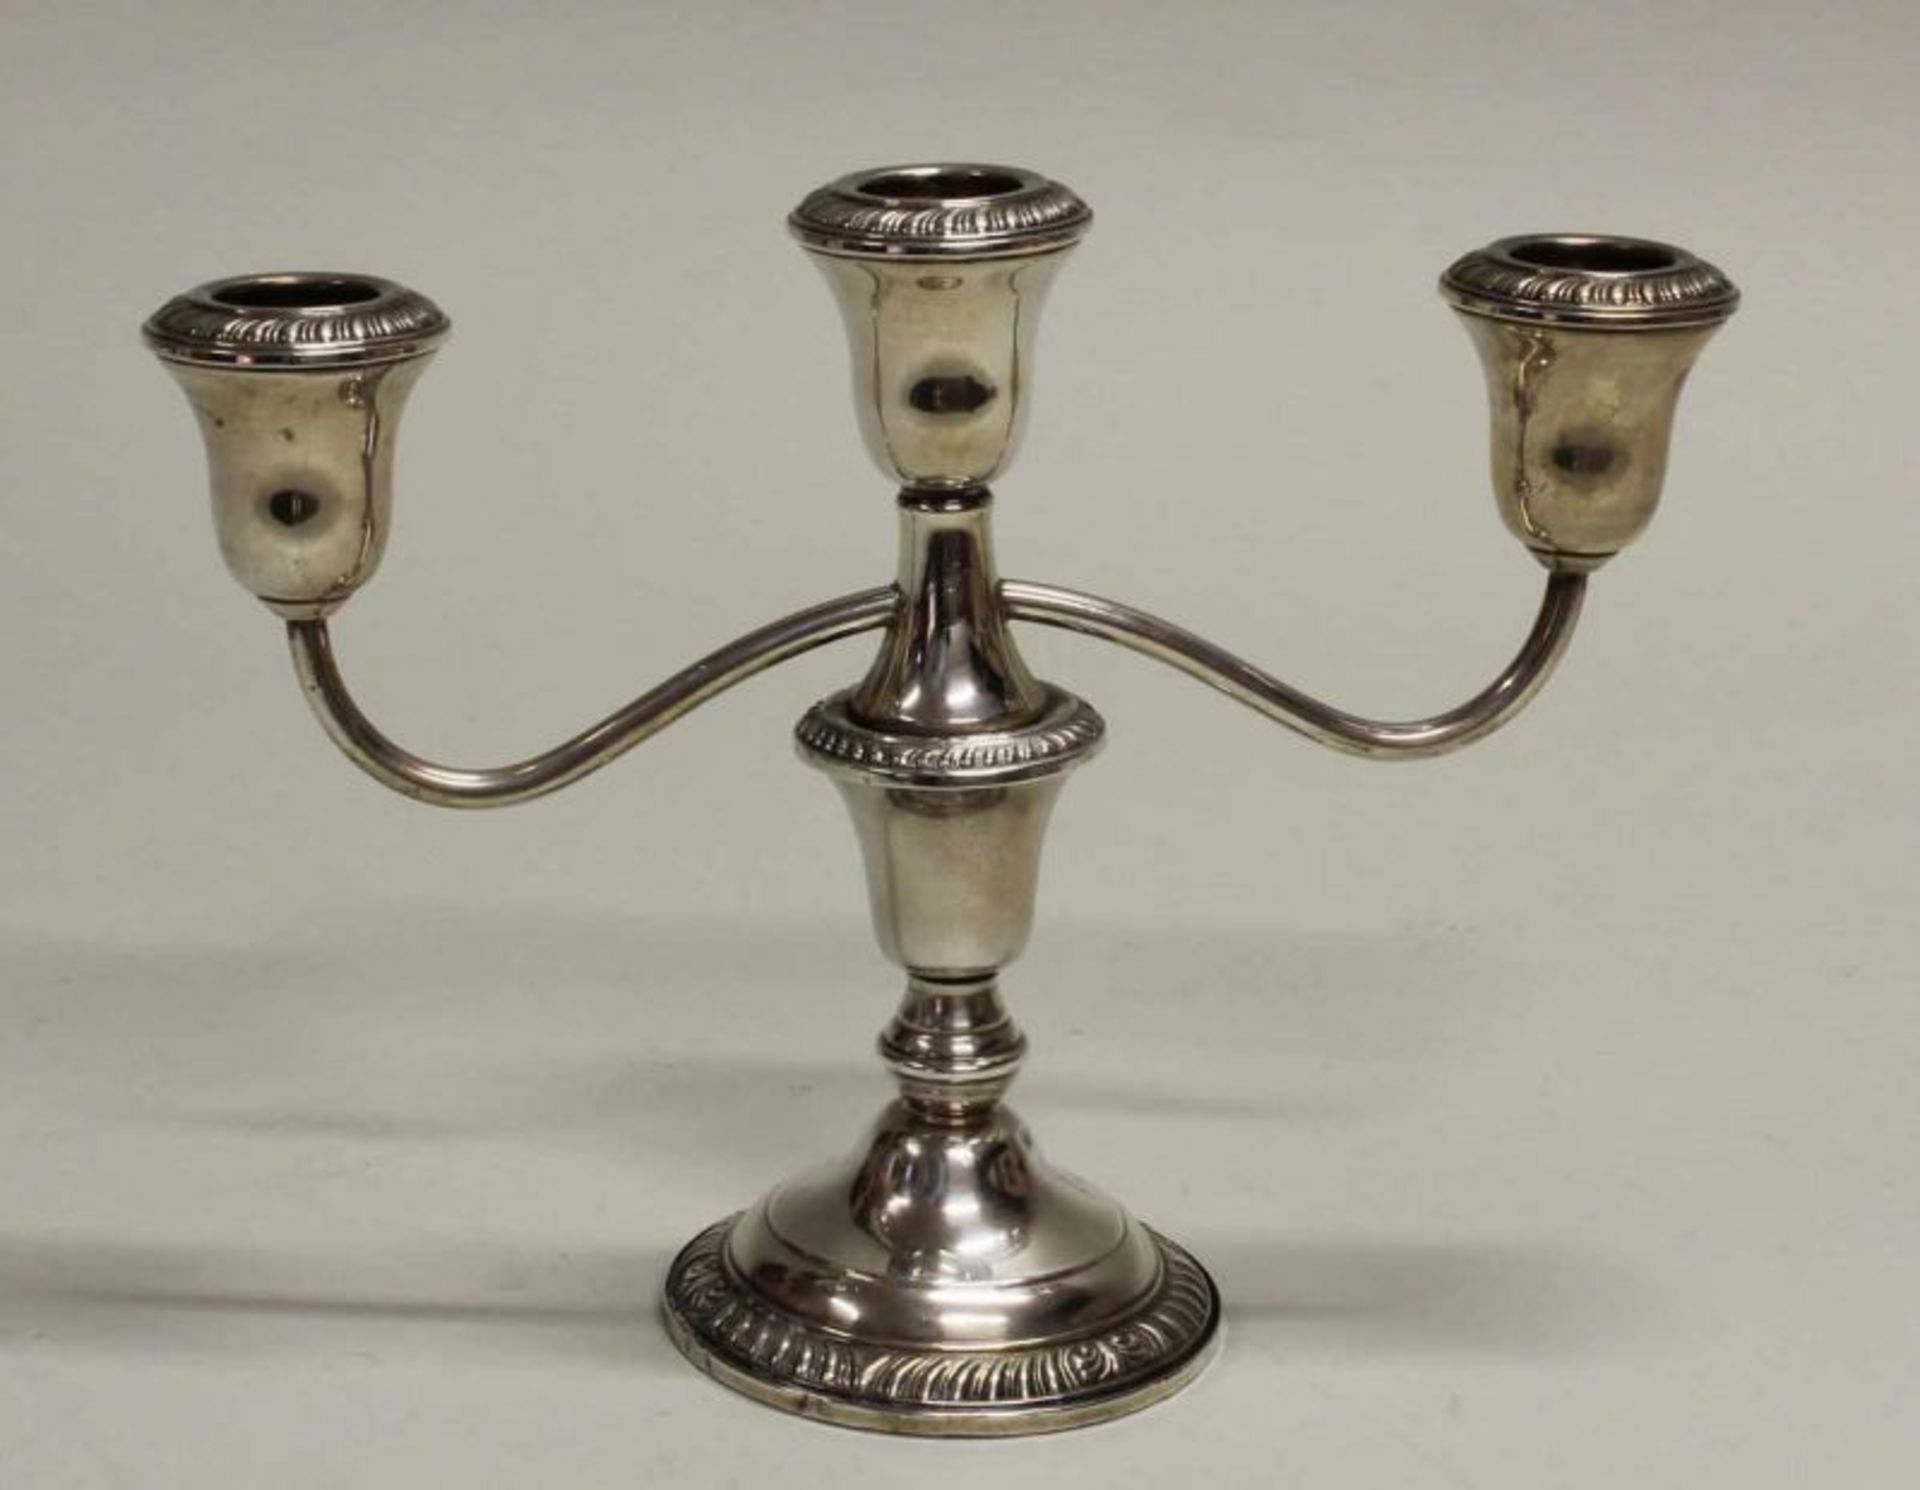 Tischleuchter, Silber 925, Frank M. Withing Company, dreiflammig, Zierbordüren, Fuß gefüllt, 17.5 cm